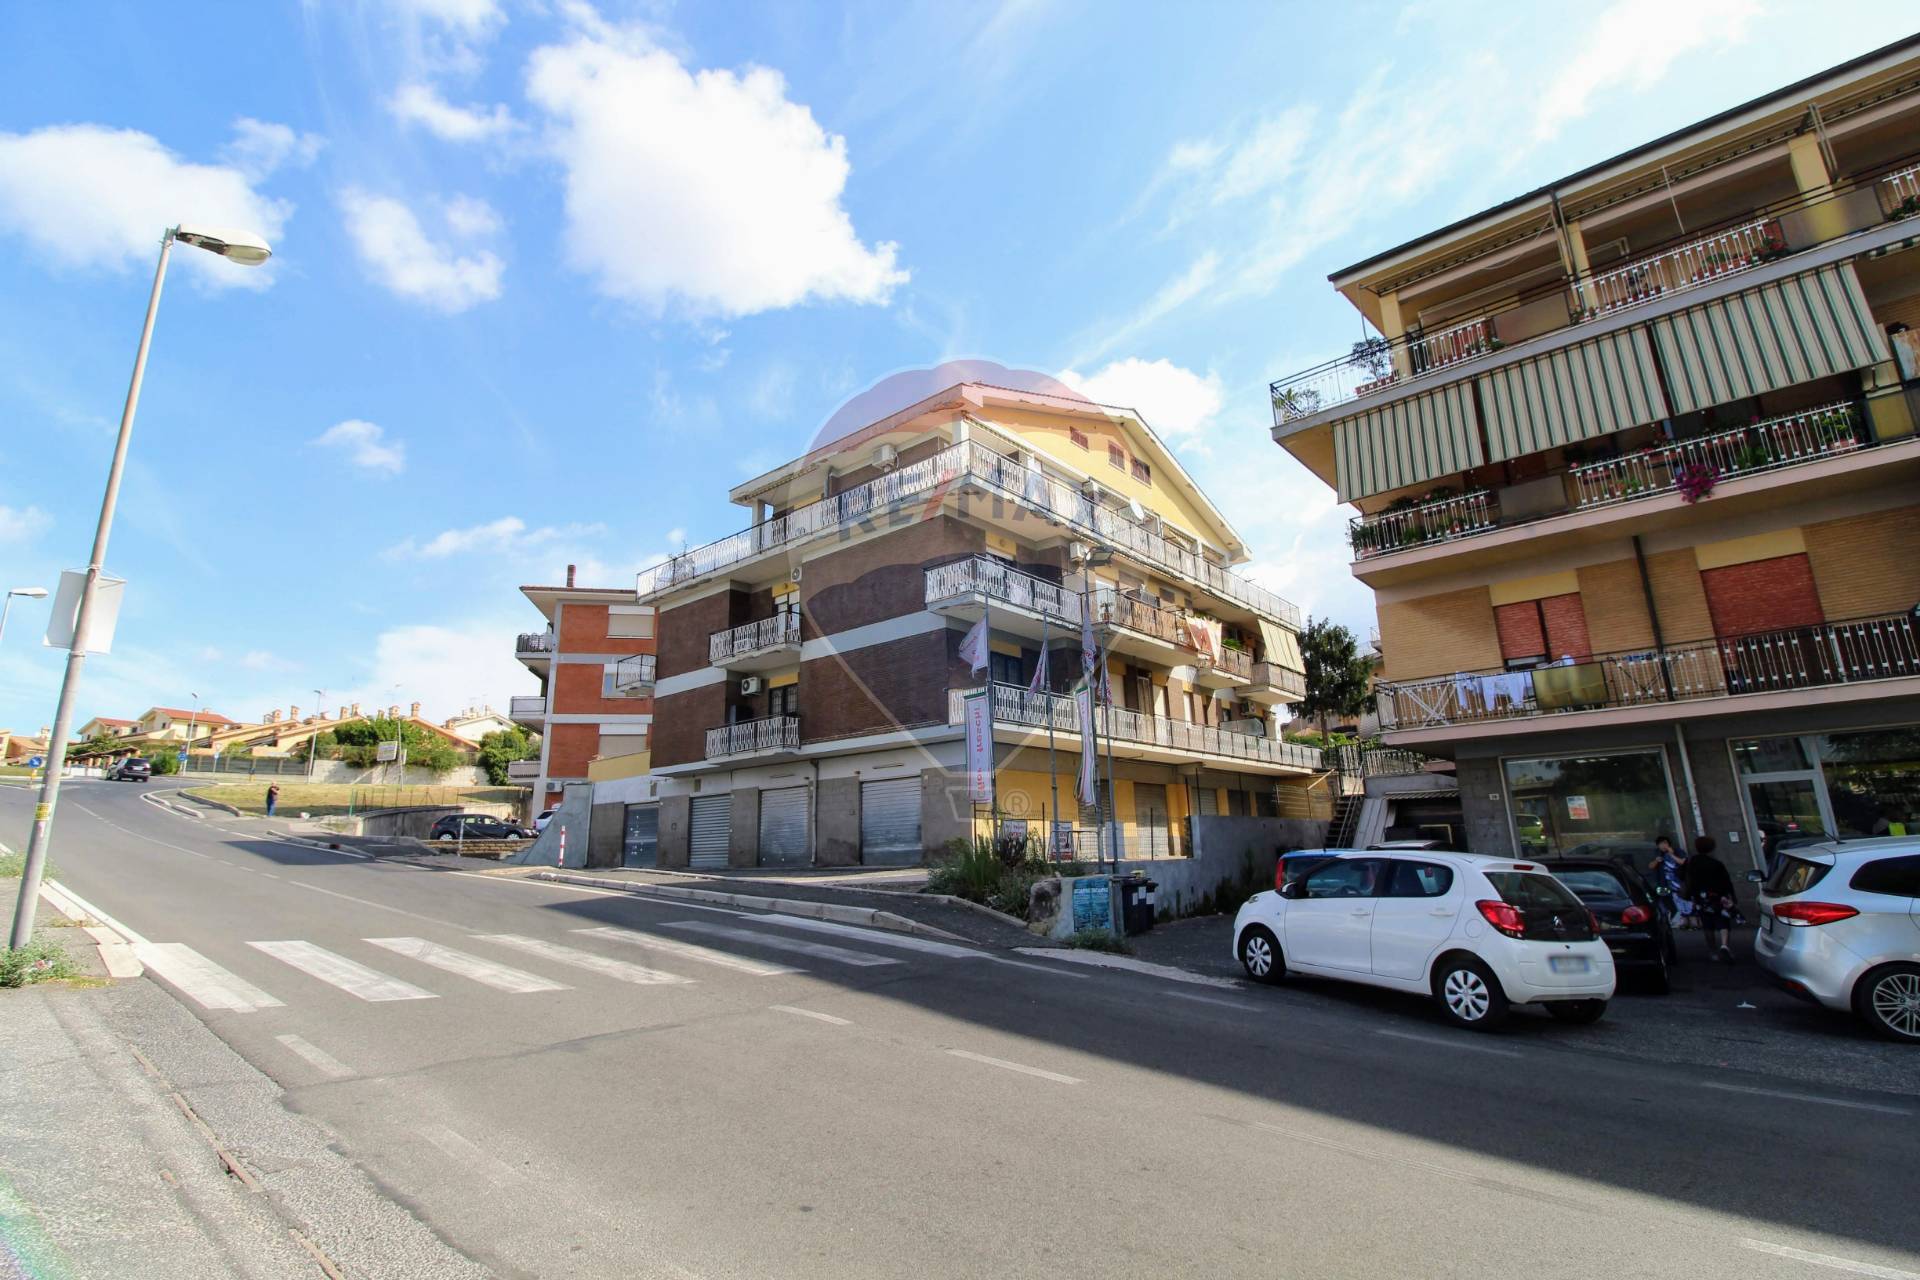 Negozio / Locale in vendita a Albano Laziale, 9999 locali, zona Zona: Cecchina, prezzo € 180.000 | CambioCasa.it